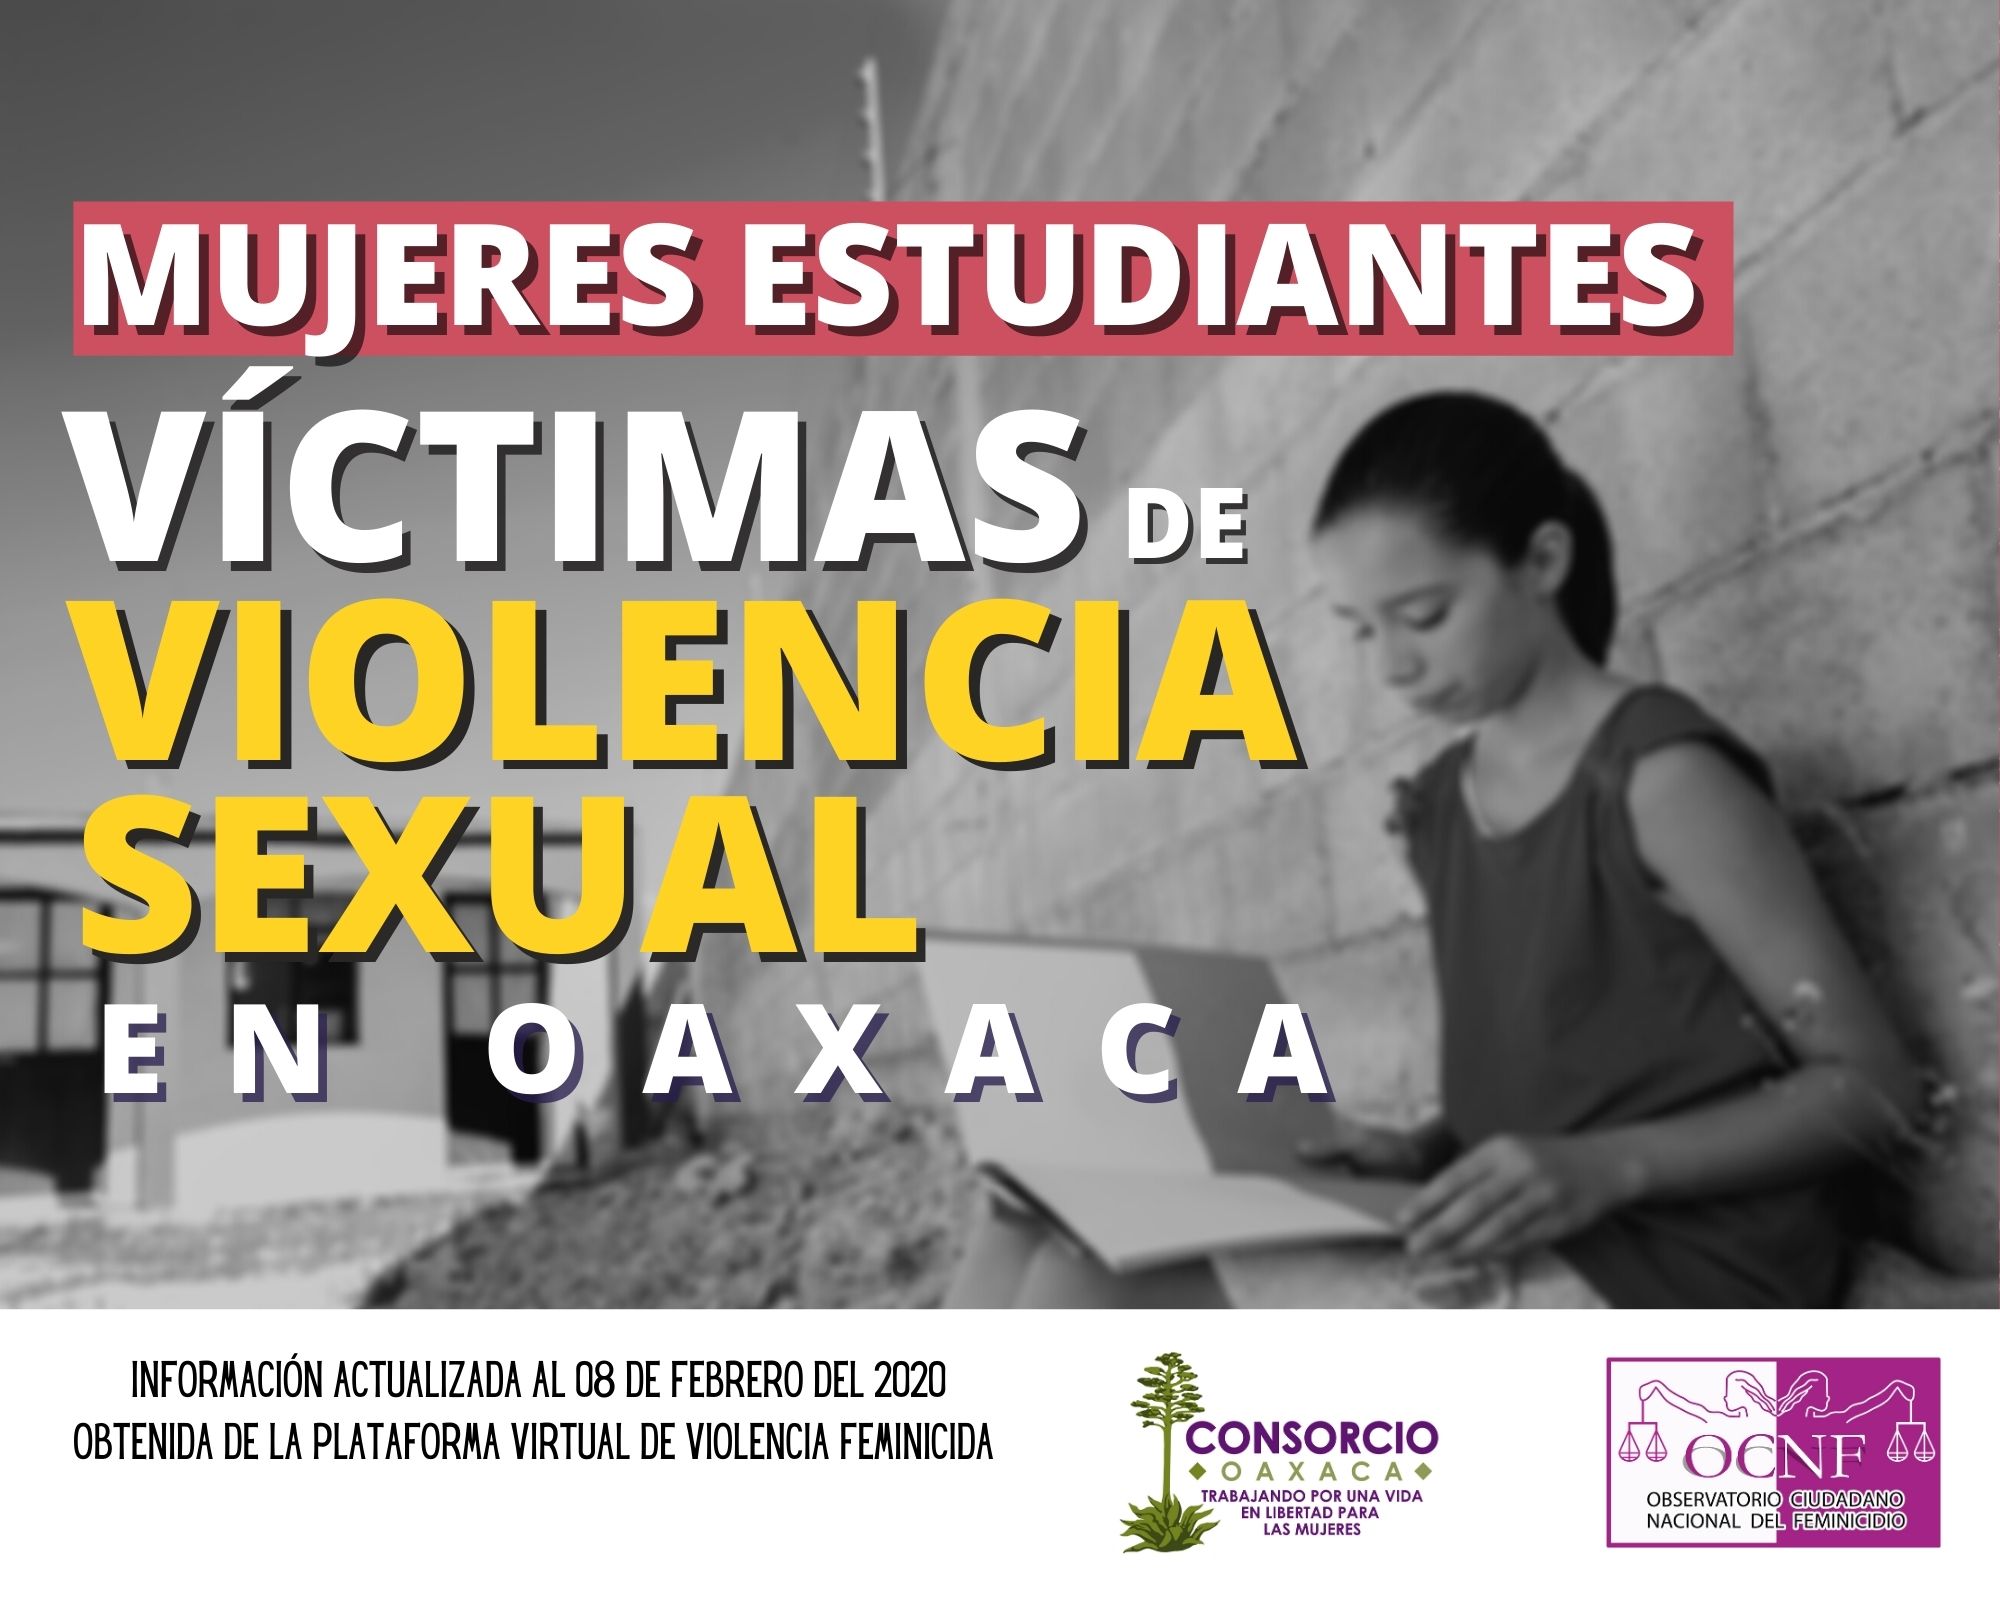 Mujeres estudiantes víctimas de violencia sexual en Oaxaca